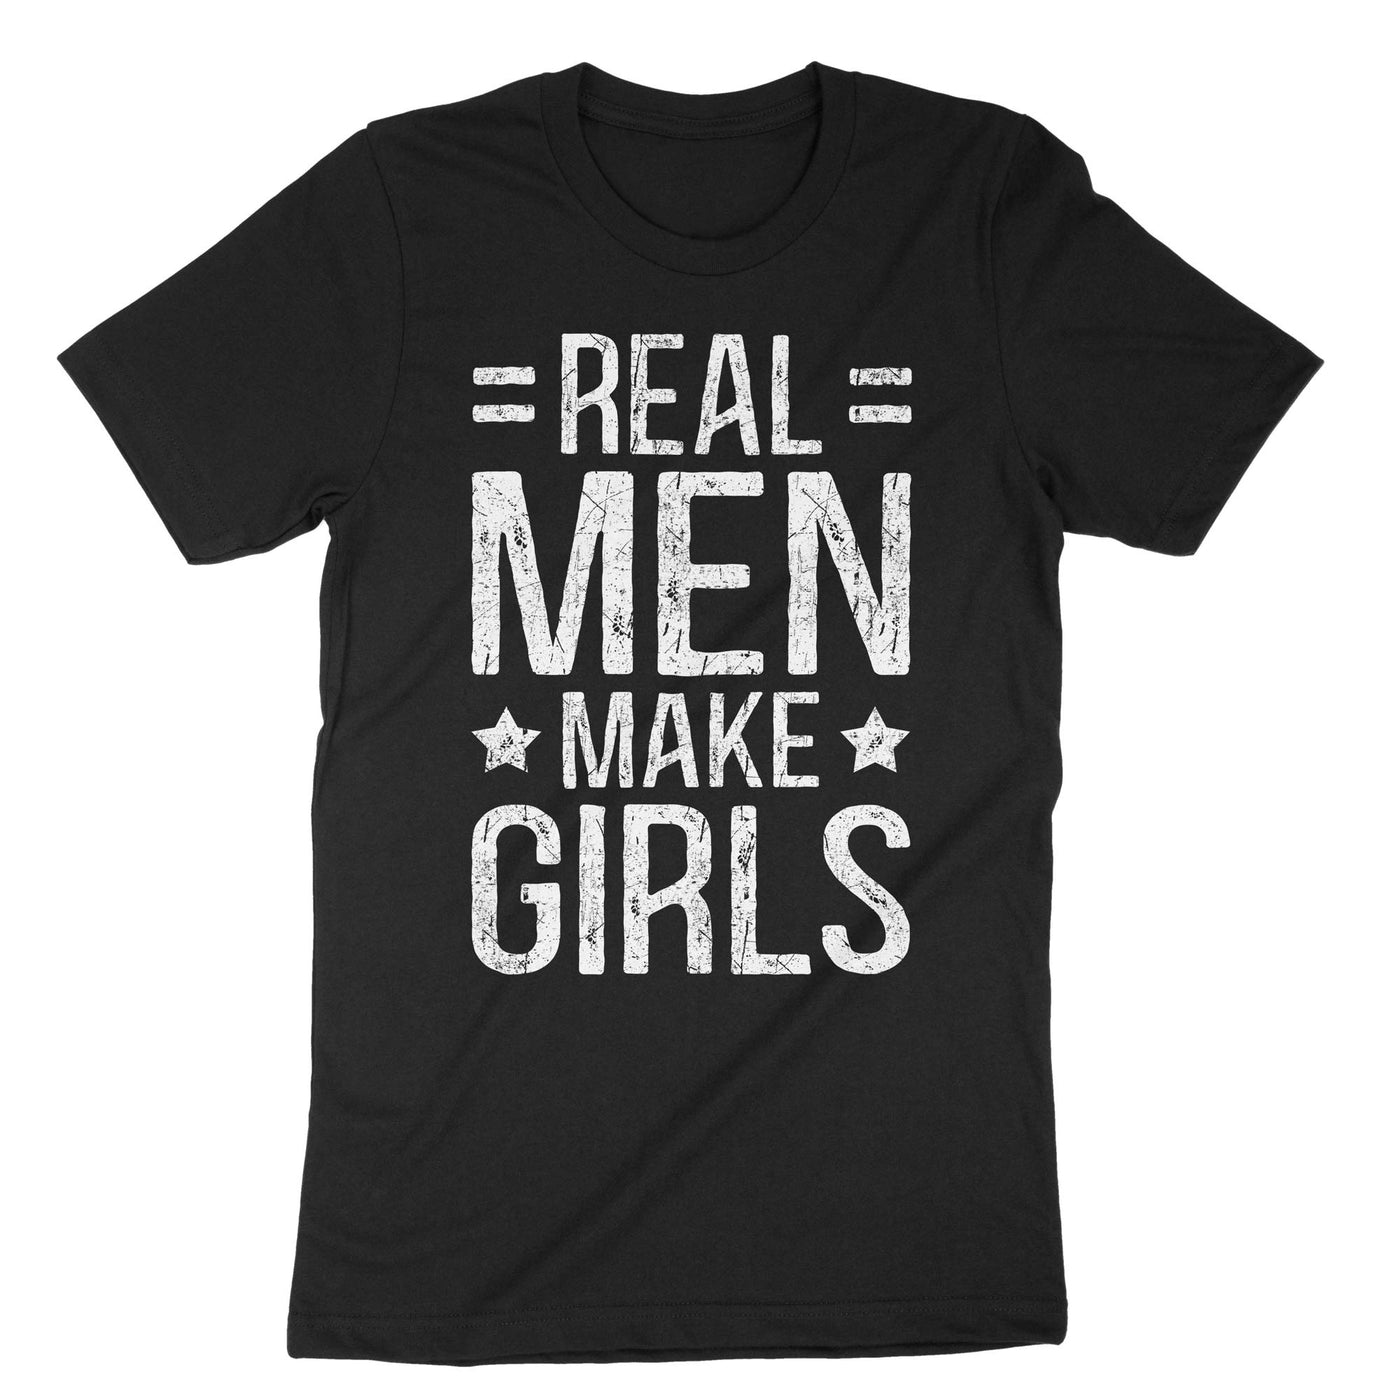 Black Real Men Make Girls T-Shirt#color_black